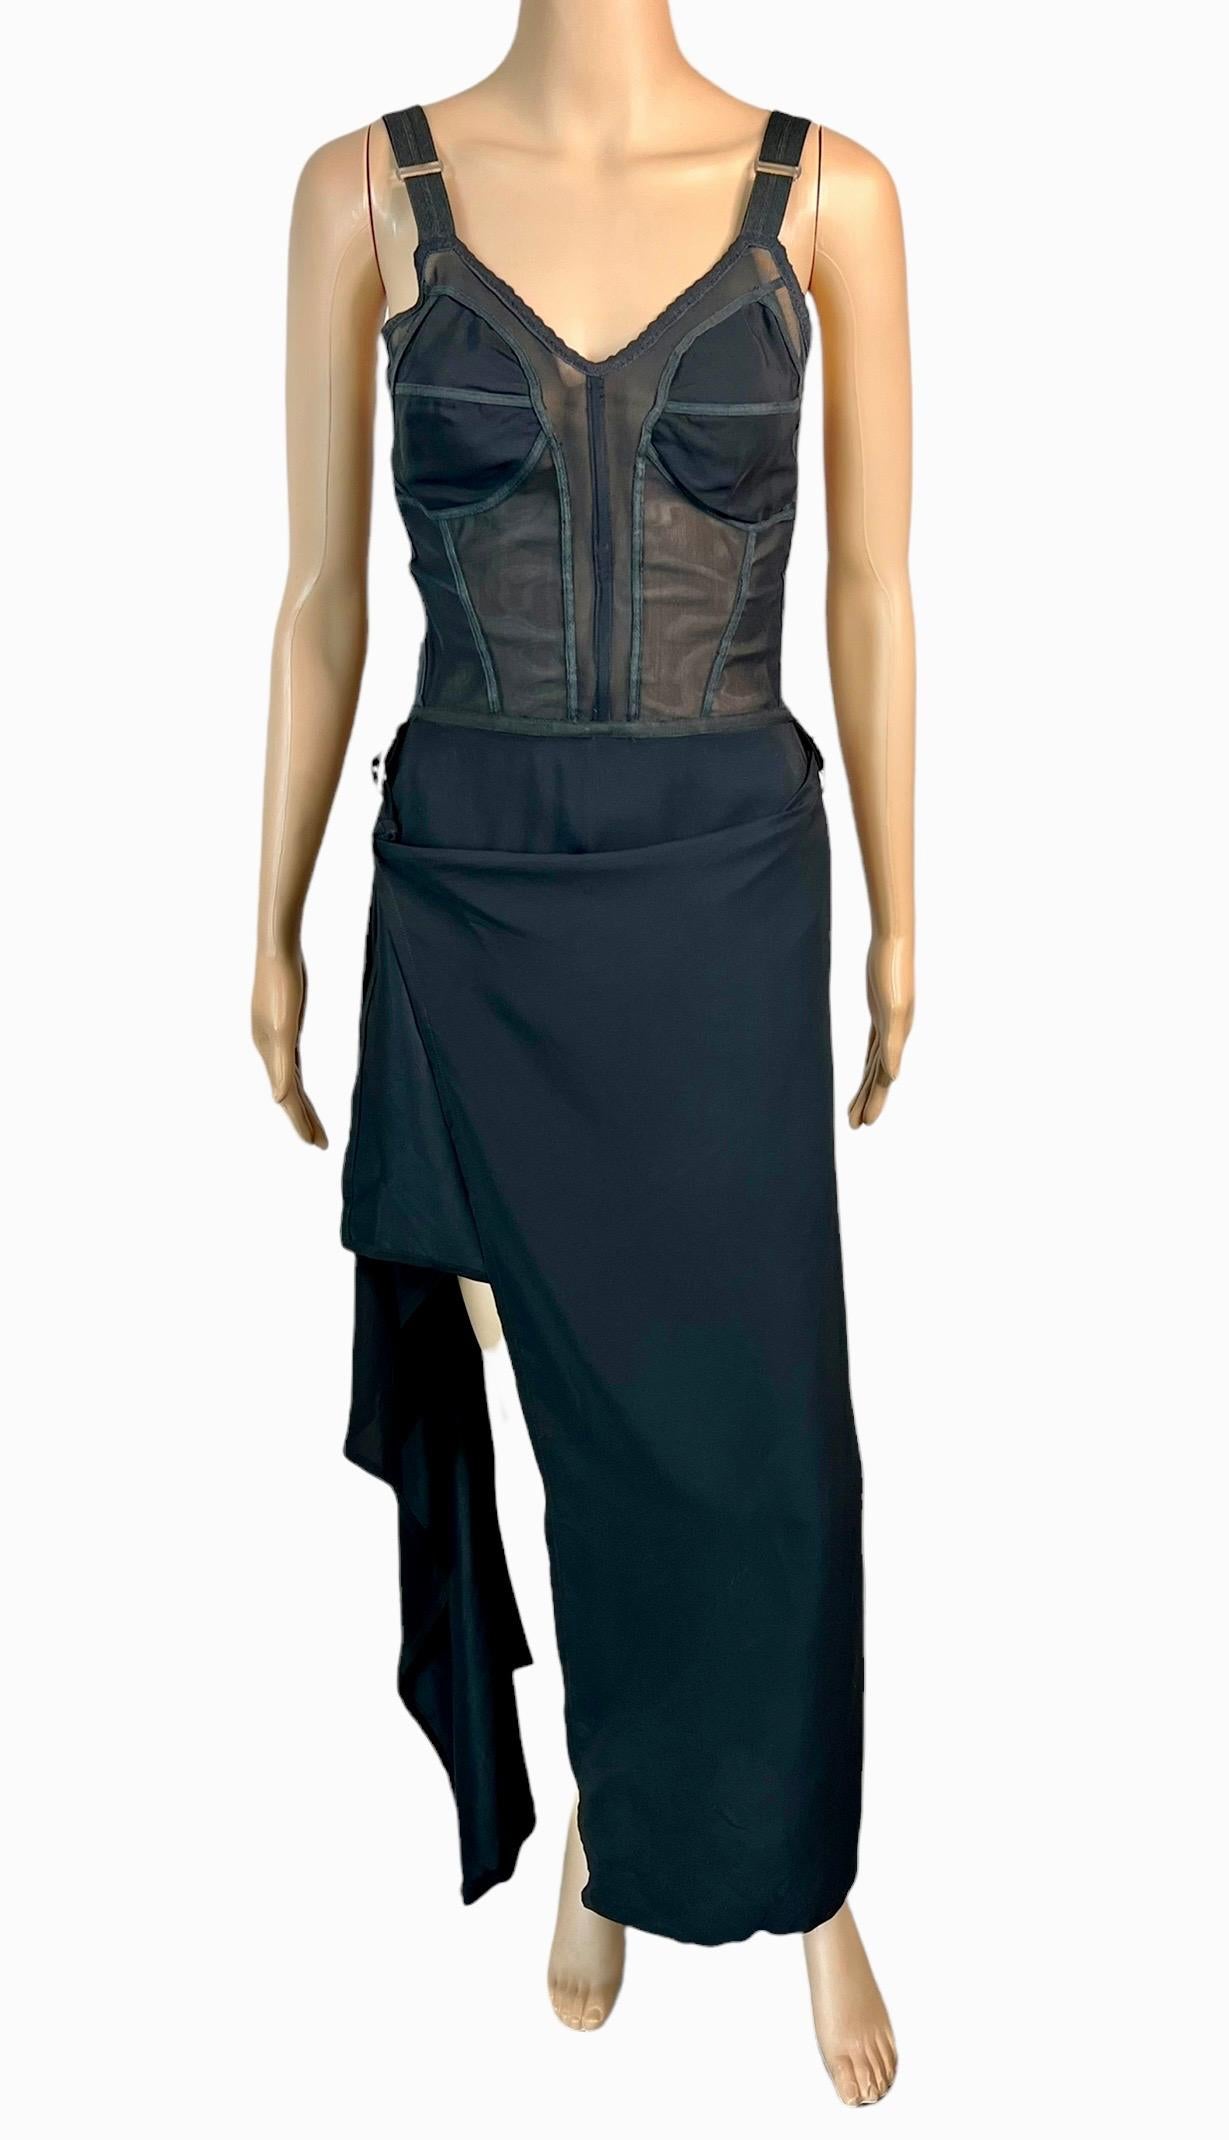 Jean Paul Gaultier S/S 1992 Runway Bra Corset Sheer Panels Black Evening Dress For Sale 7